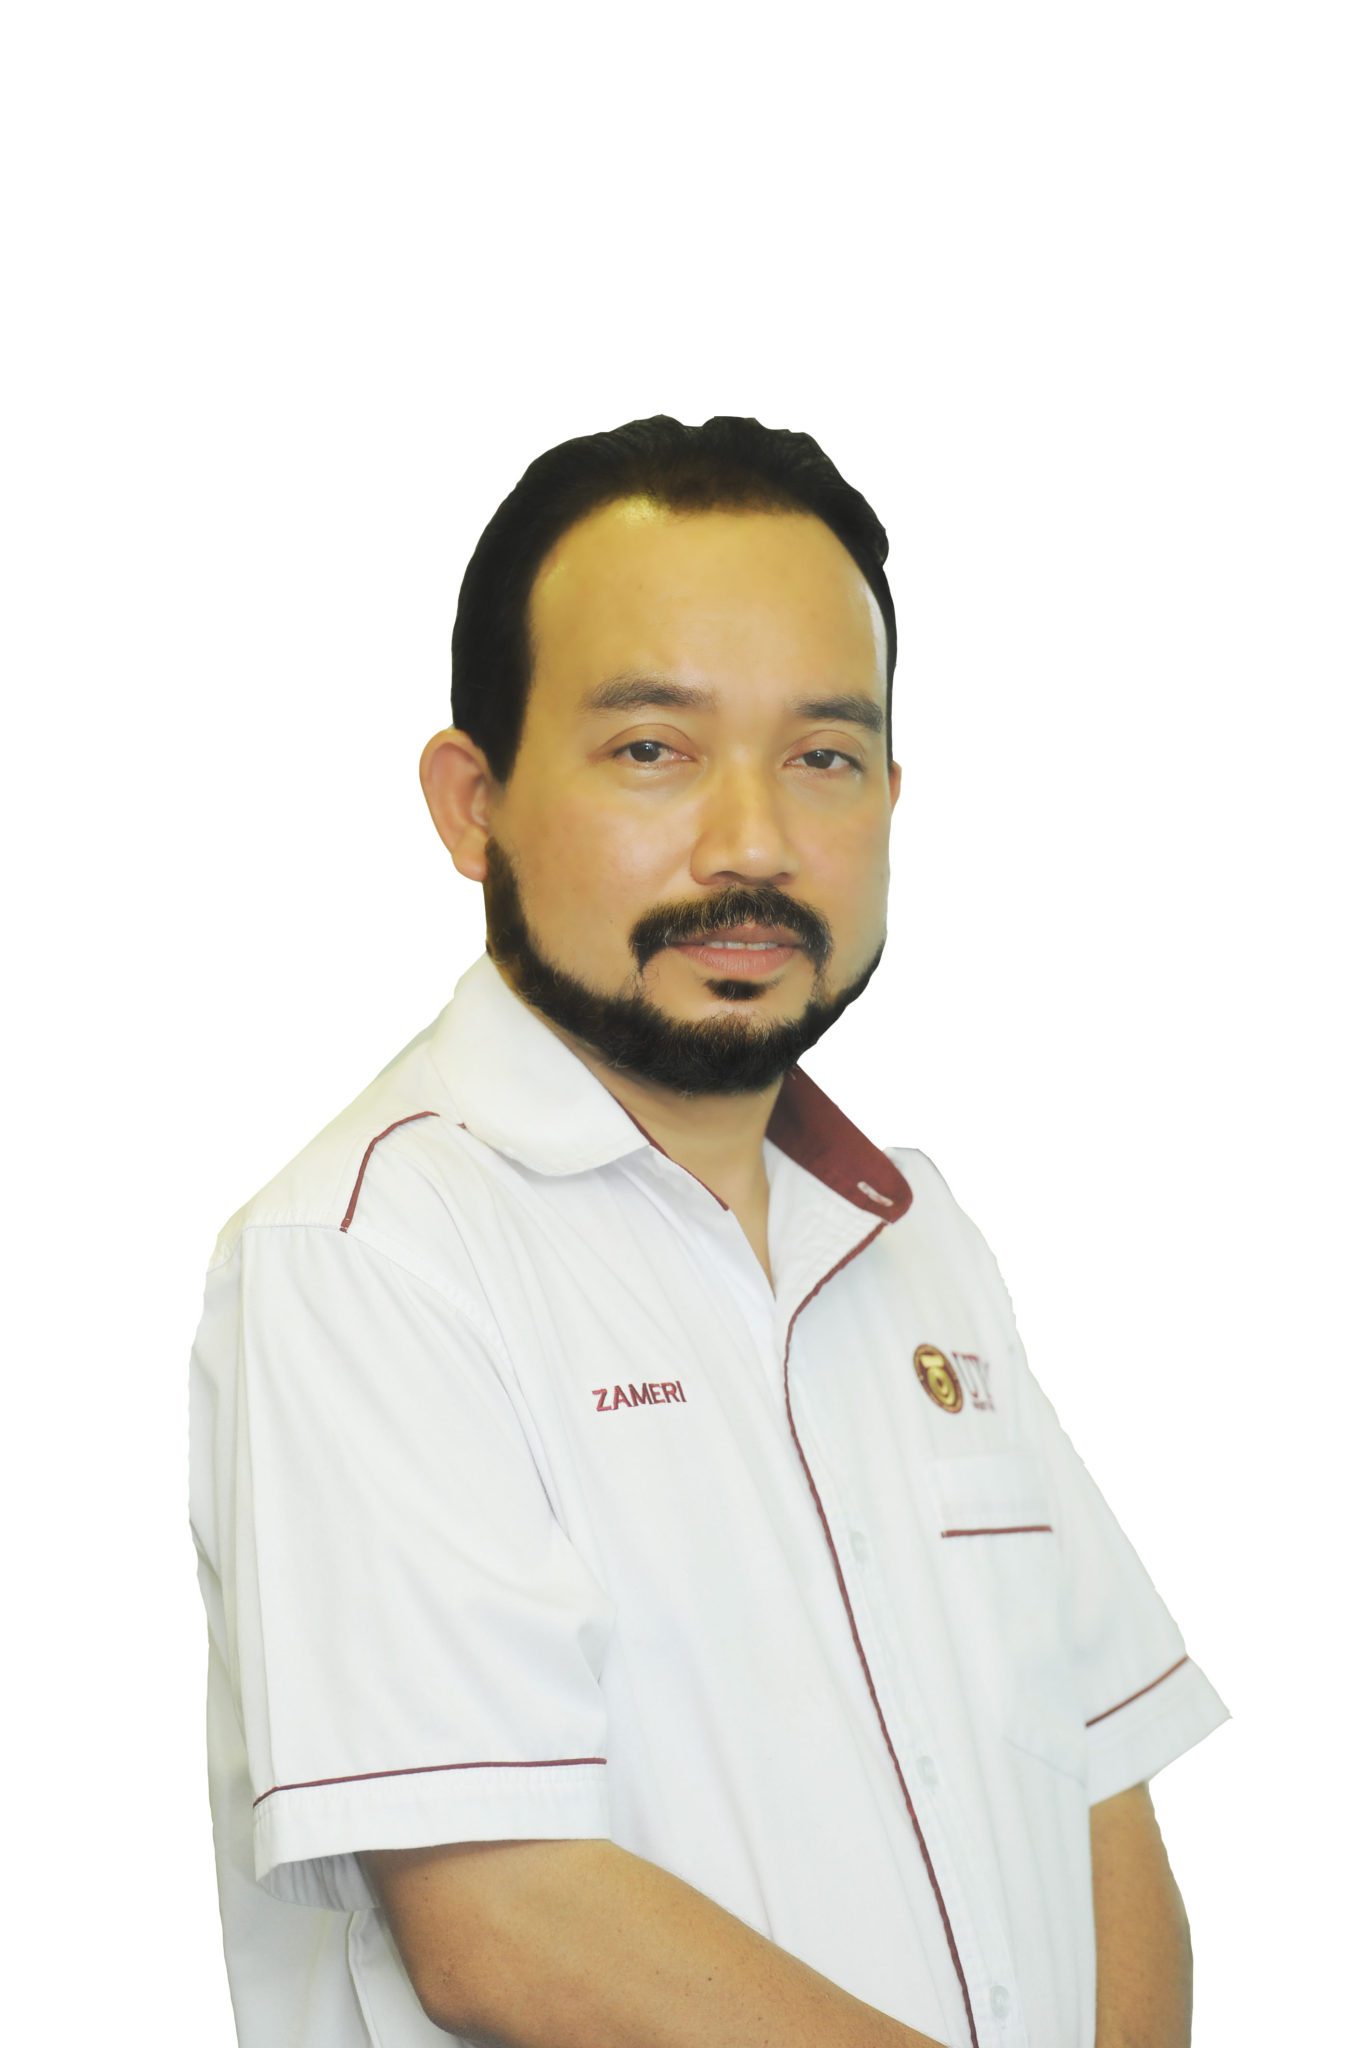 Prof. Ts. Dr. Muhamad Zameri bin Mat Saman 